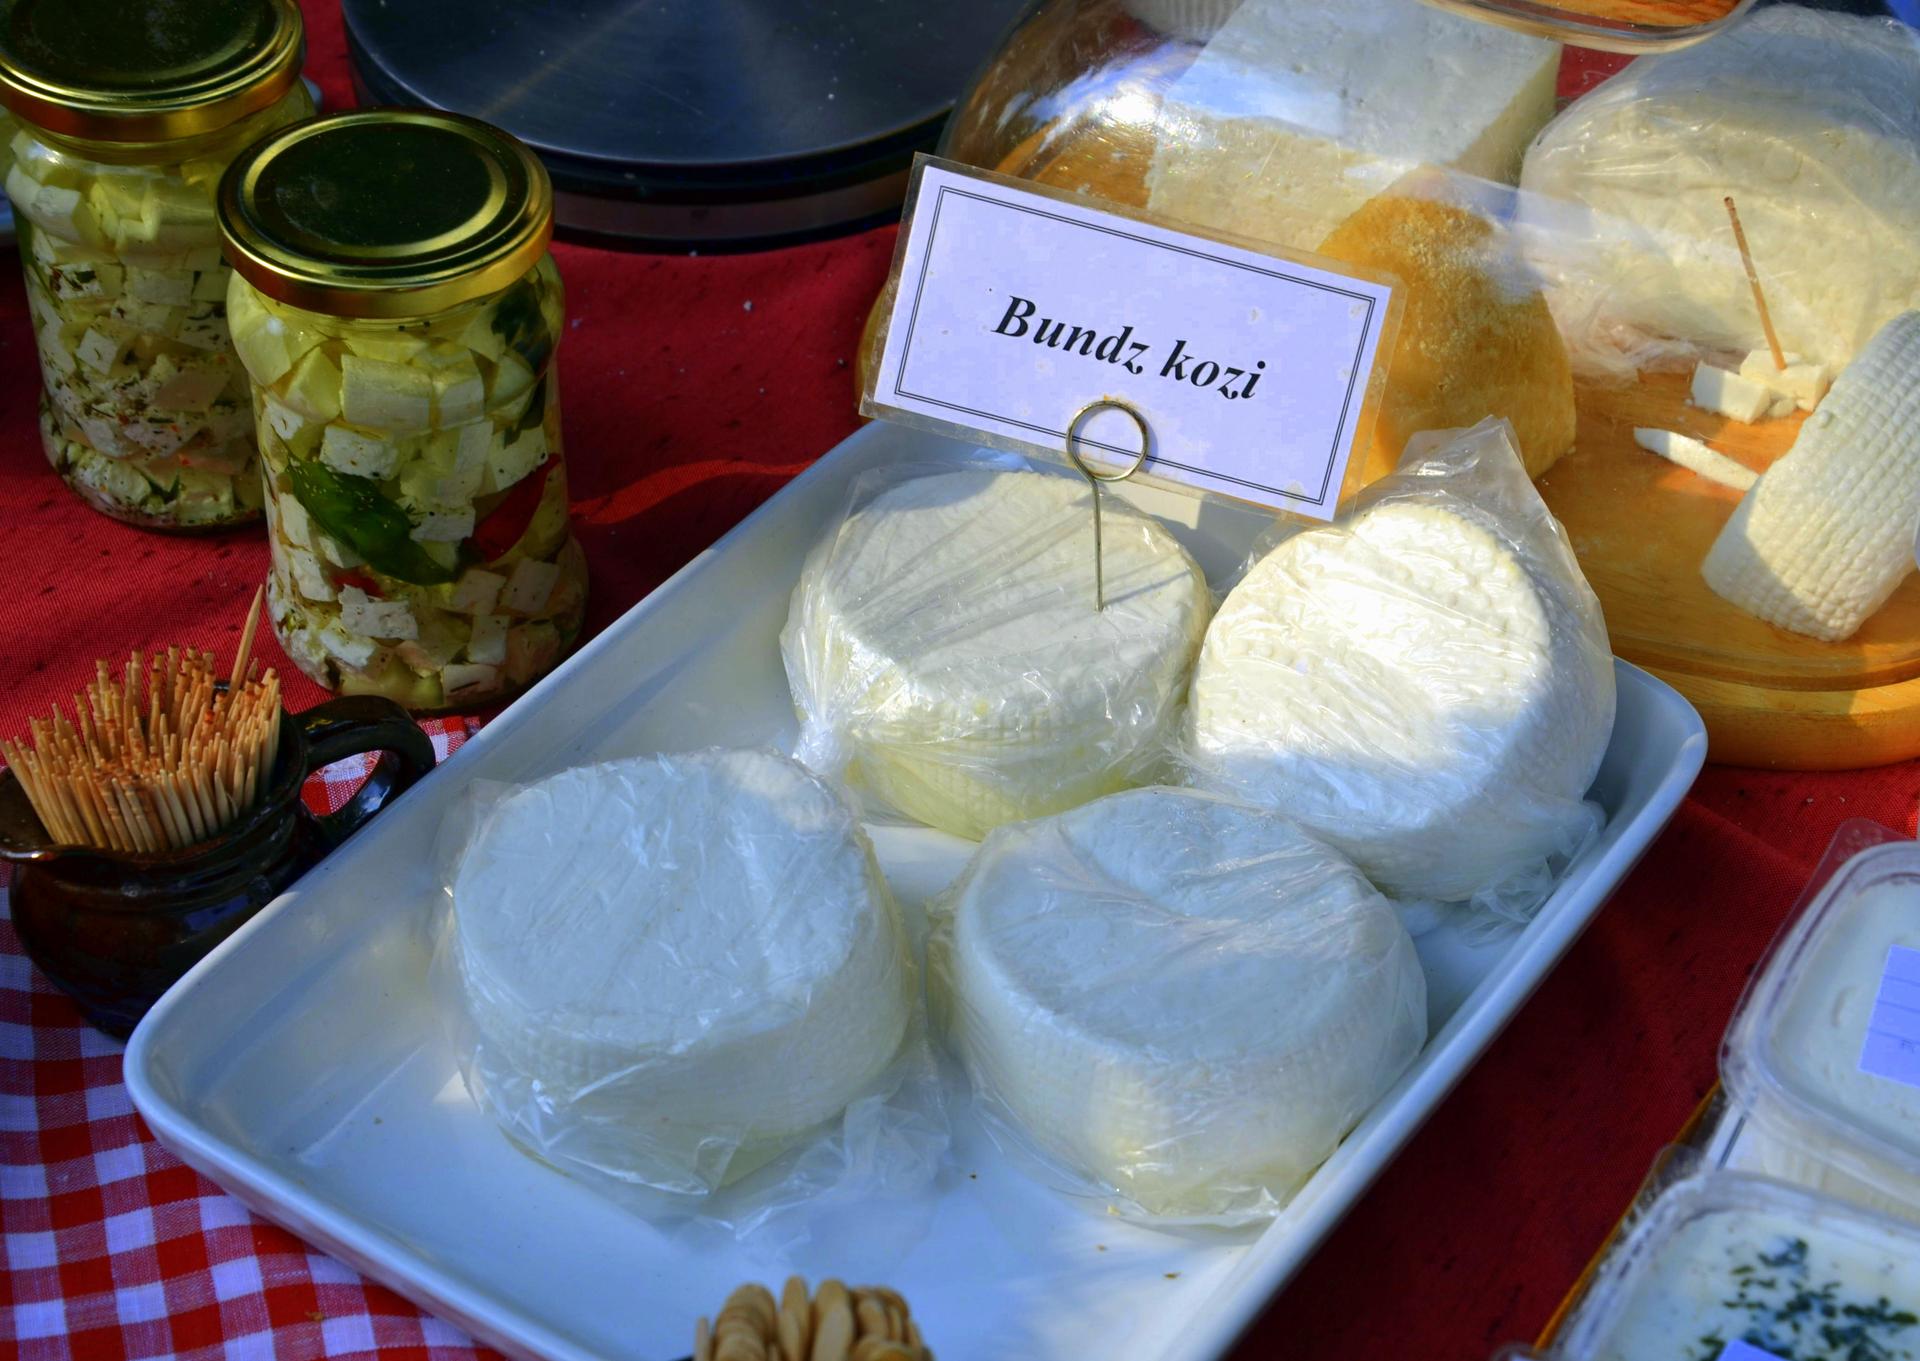 Bundz cheese from Poland.